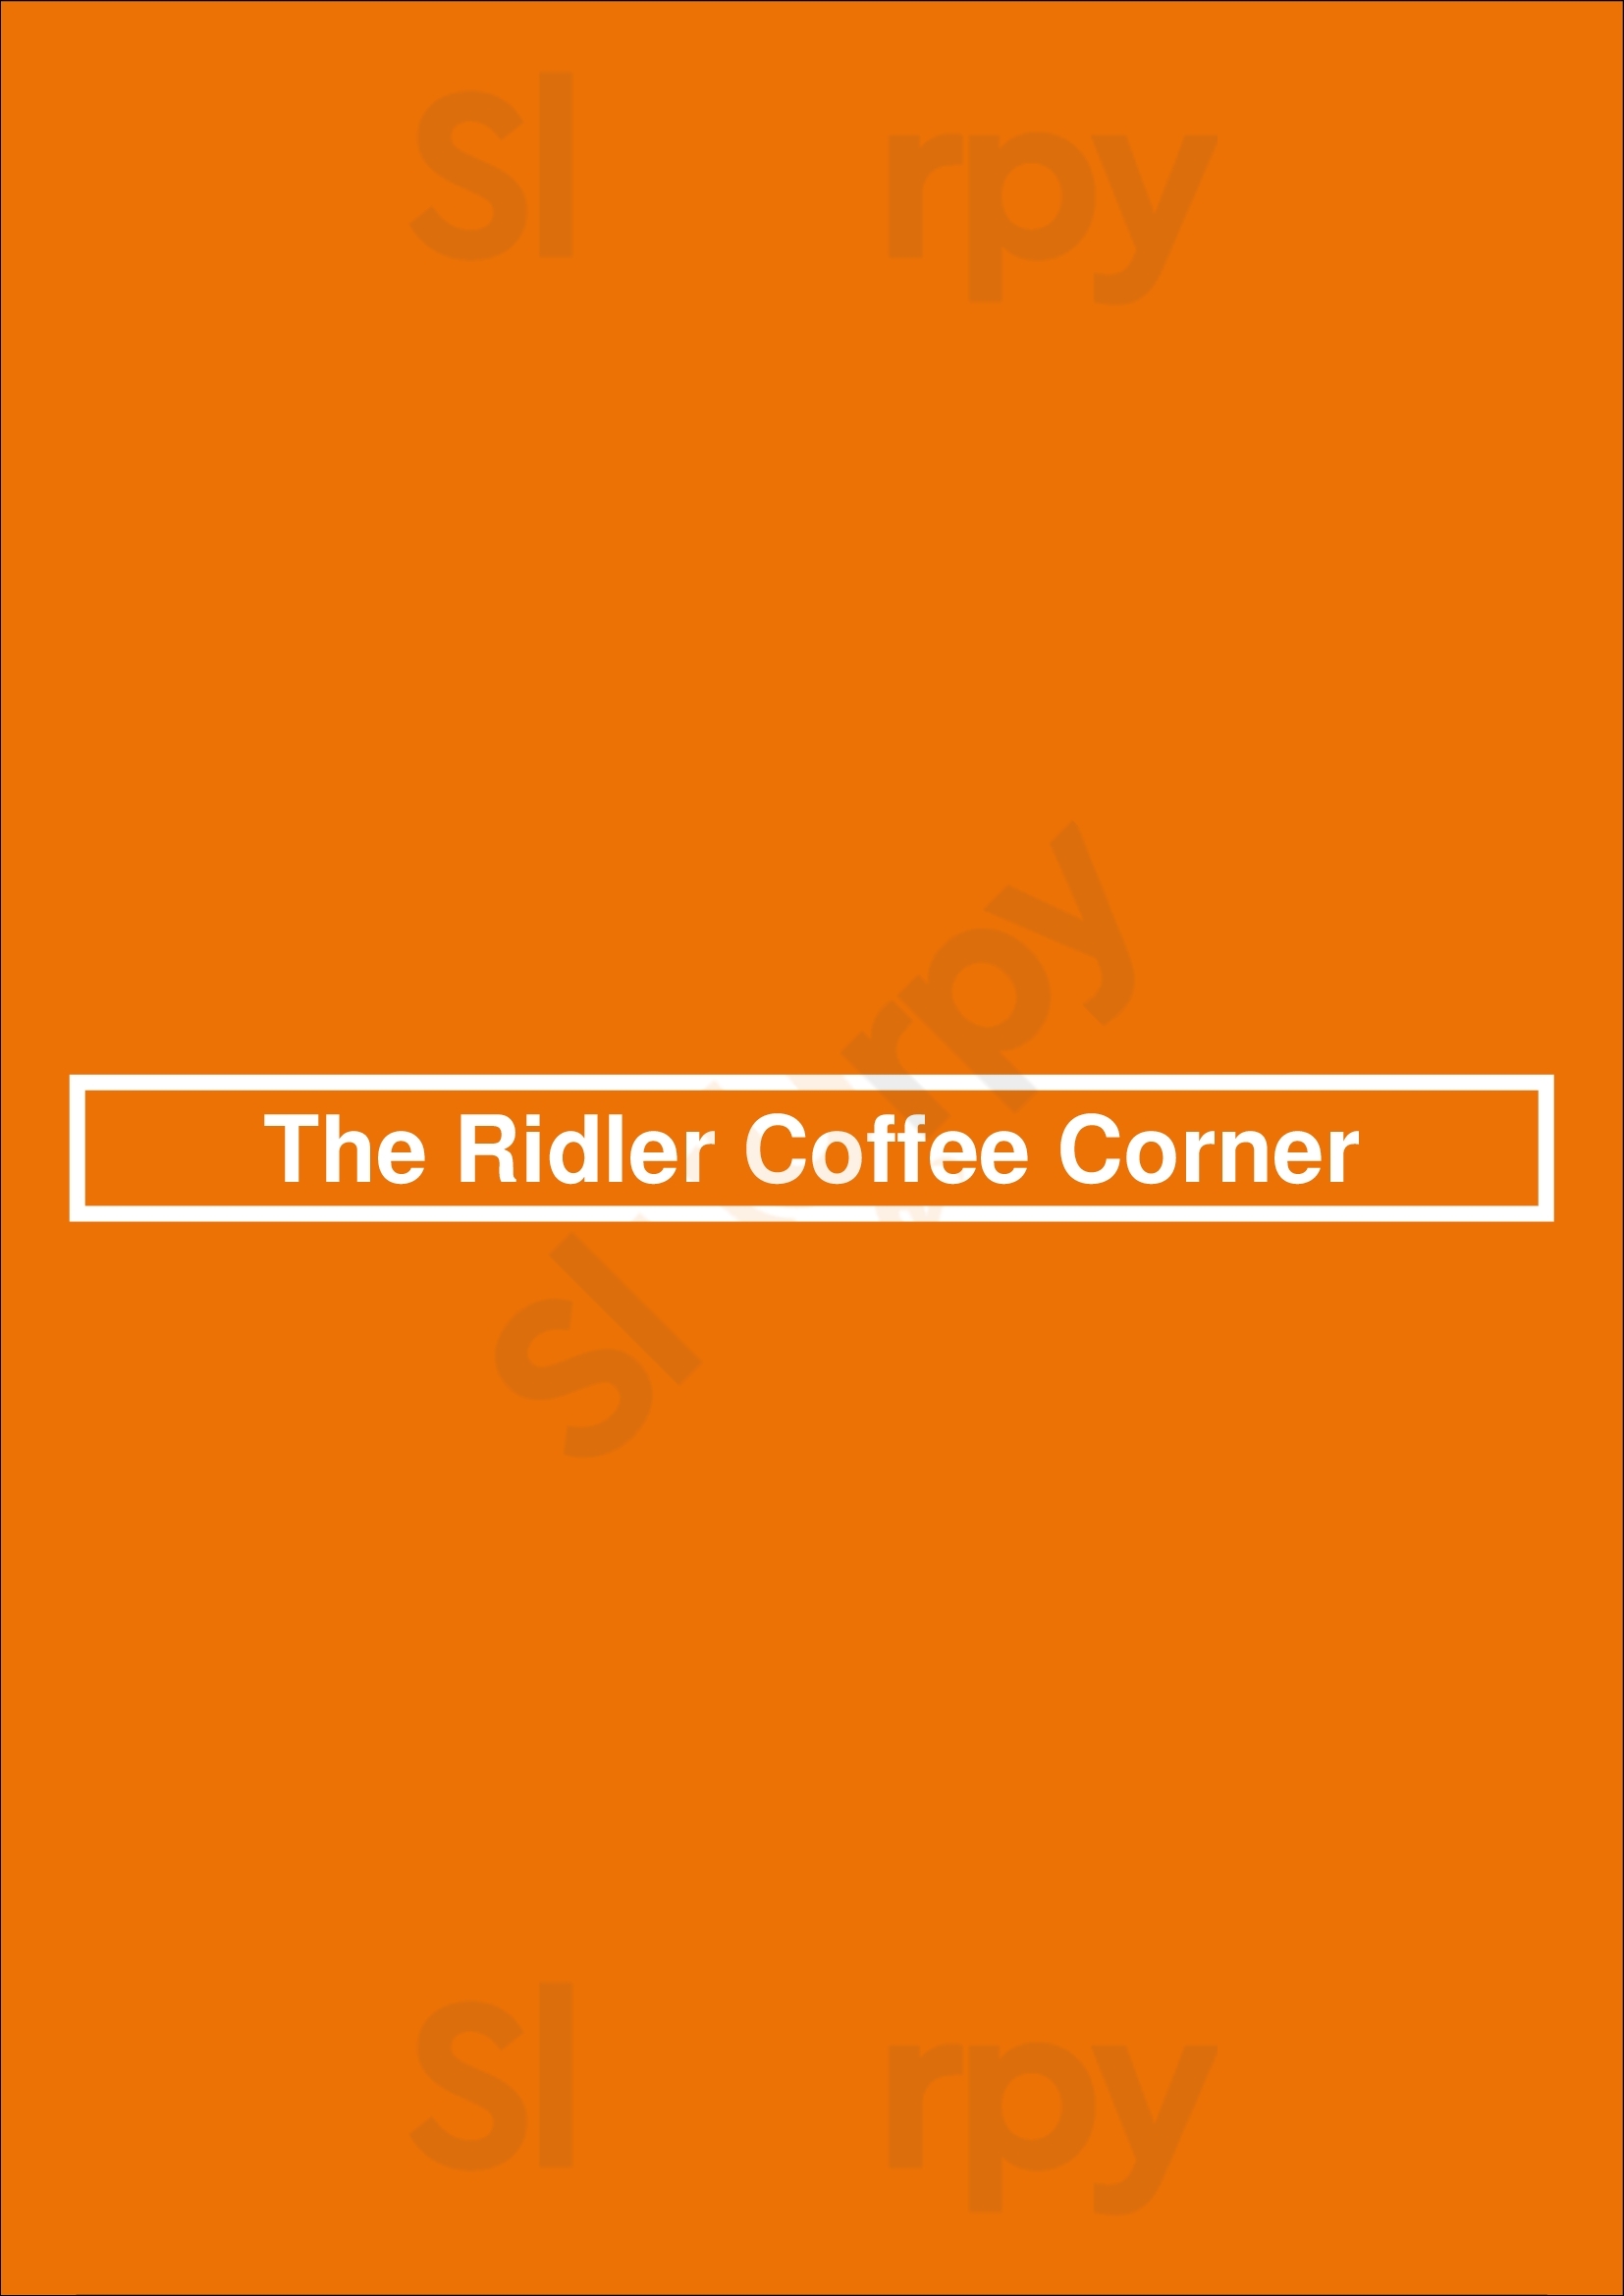 The Ridler Coffee Corner Spokane Menu - 1